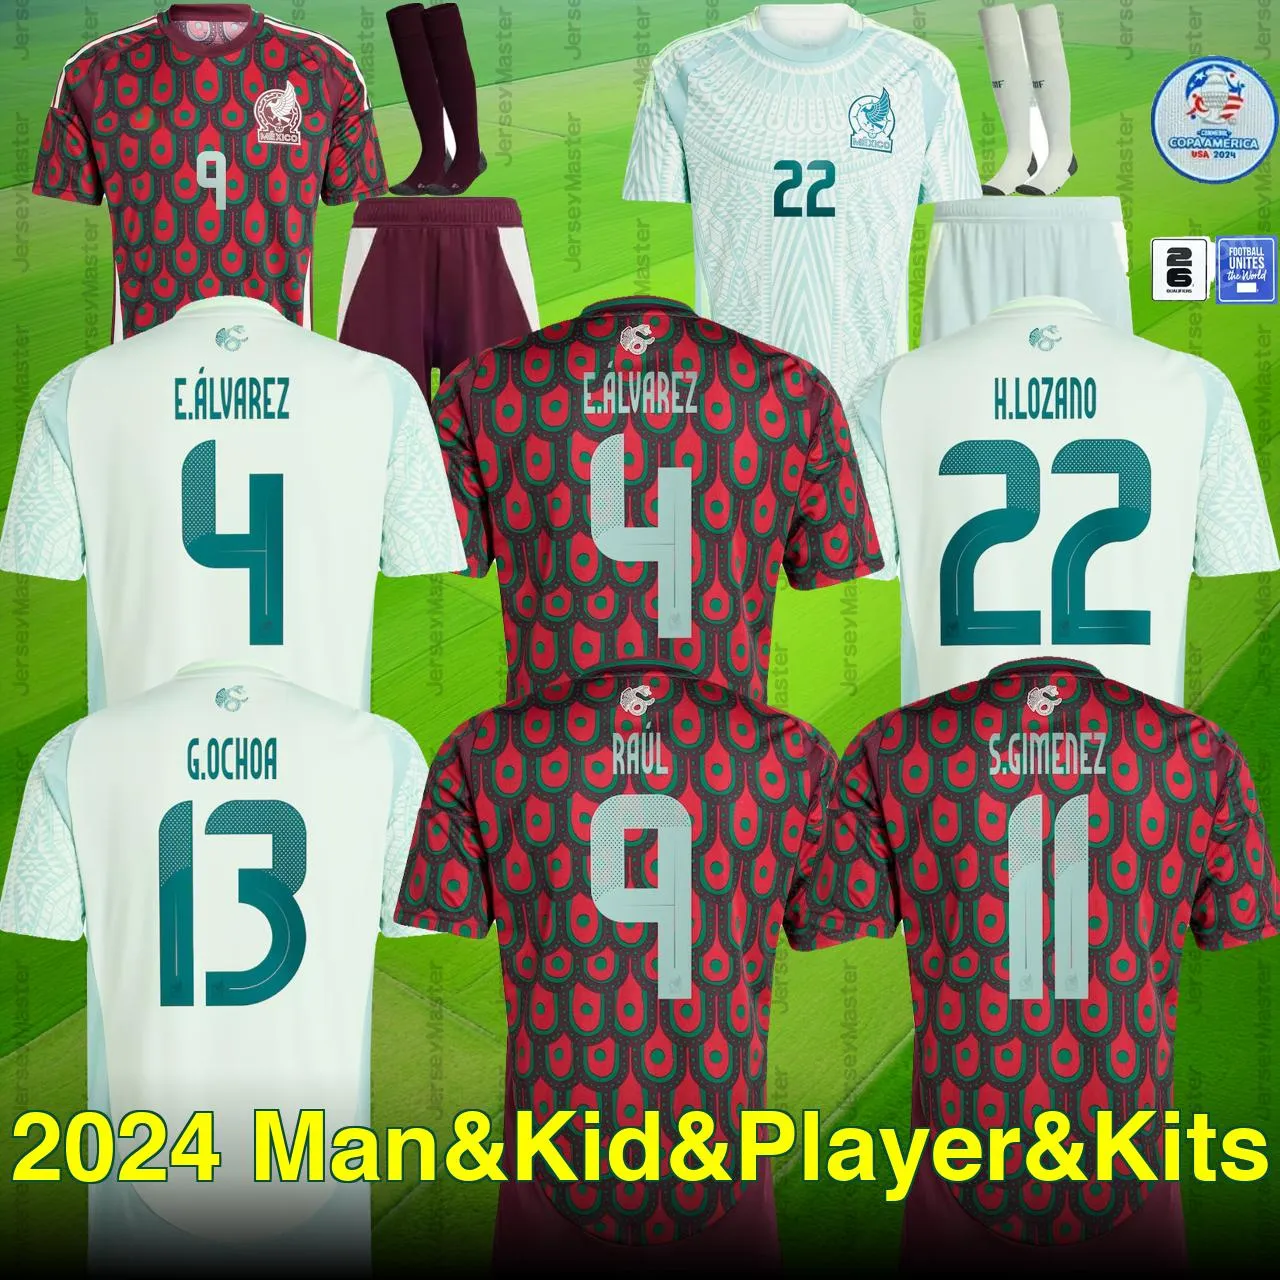 Mexique 2024 Copa America 2026 Qualifiants Raul Chicharito Soccer Jerseys Lozano Dos Santos 24 25 H.Lozano Men Kids Football Shirts Uniforms Fans Player Version